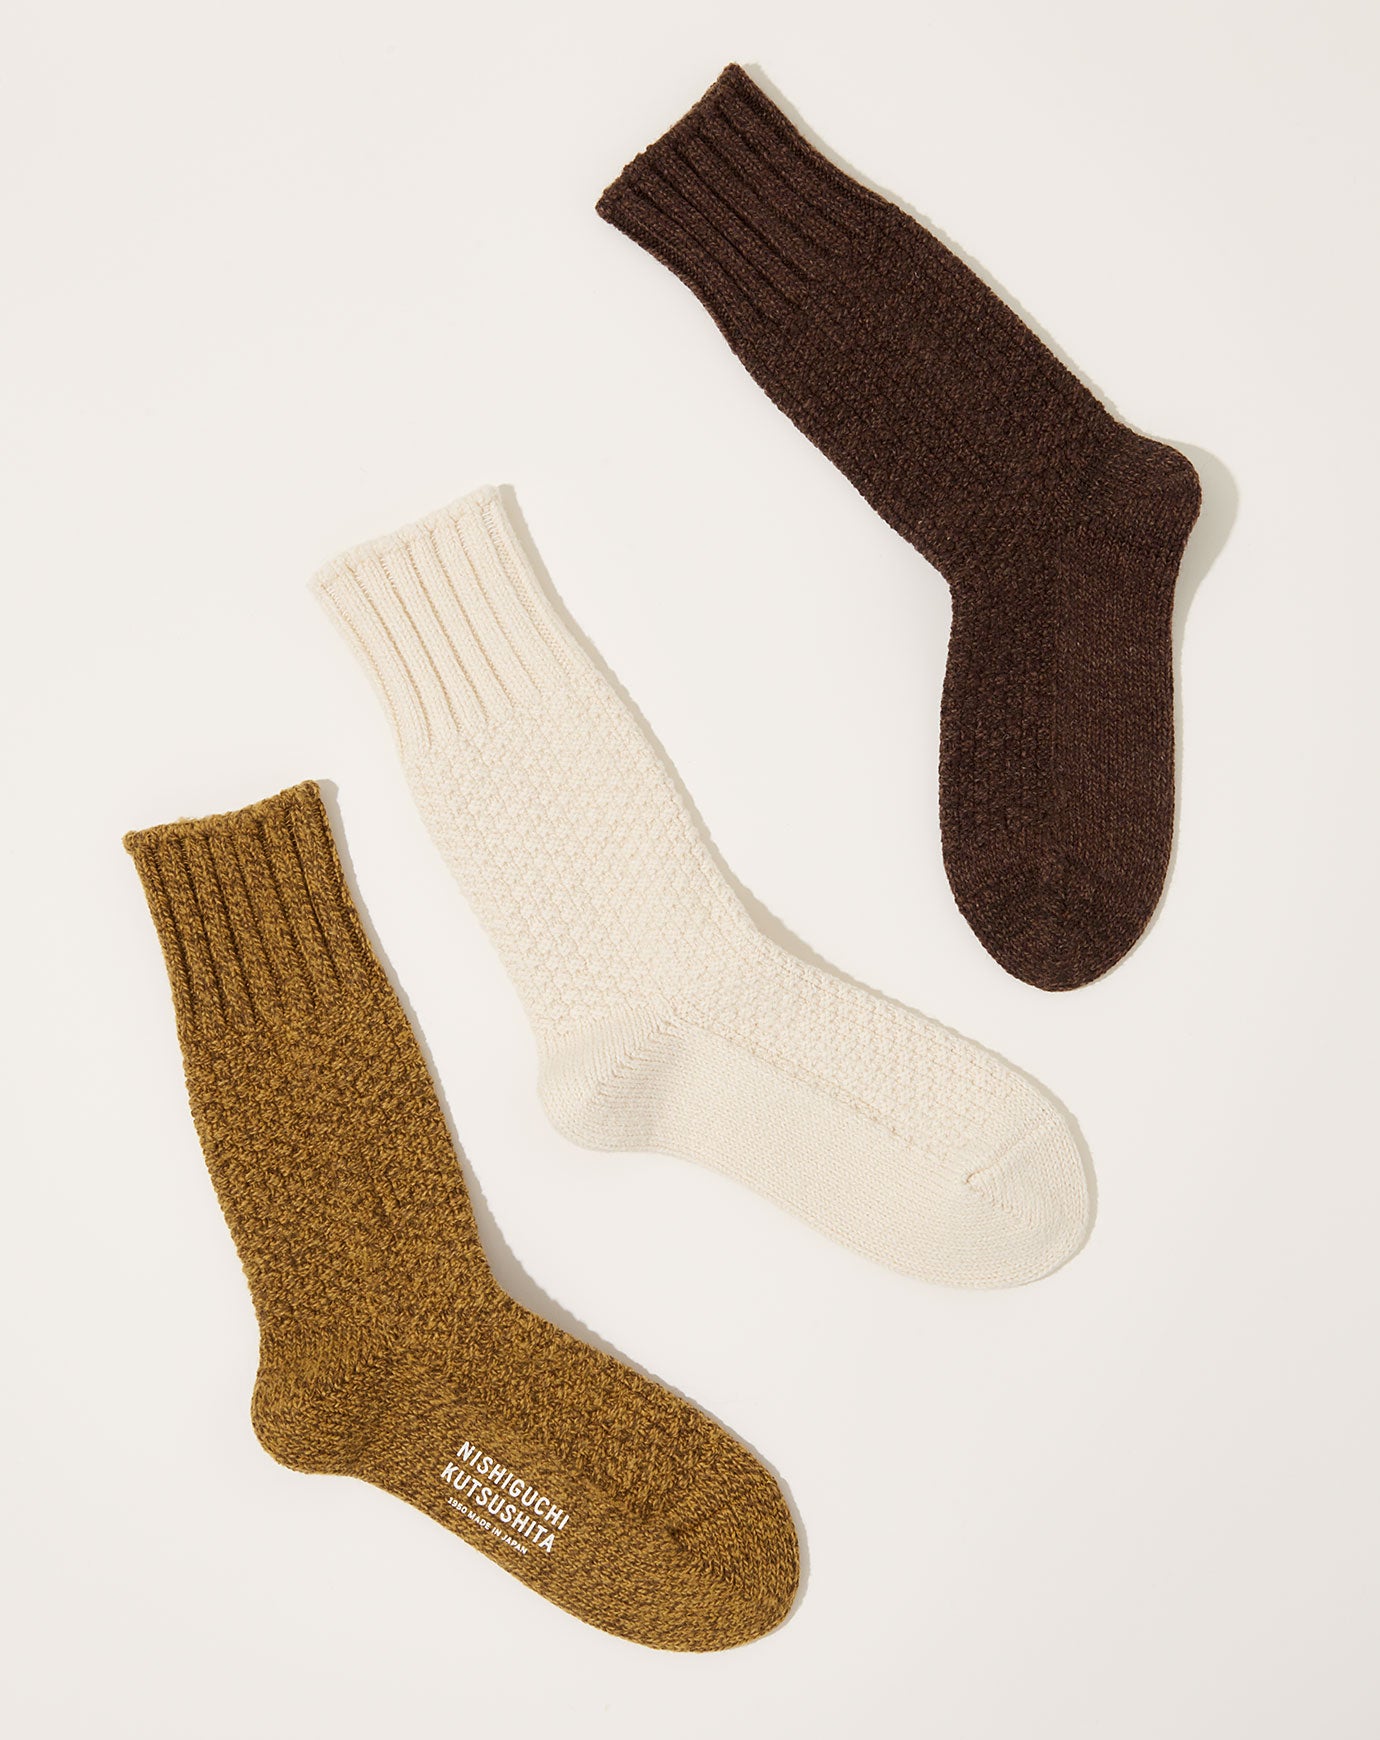 Nishiguchi Kutsushita Wool Cotton Boot Socks in Mustard